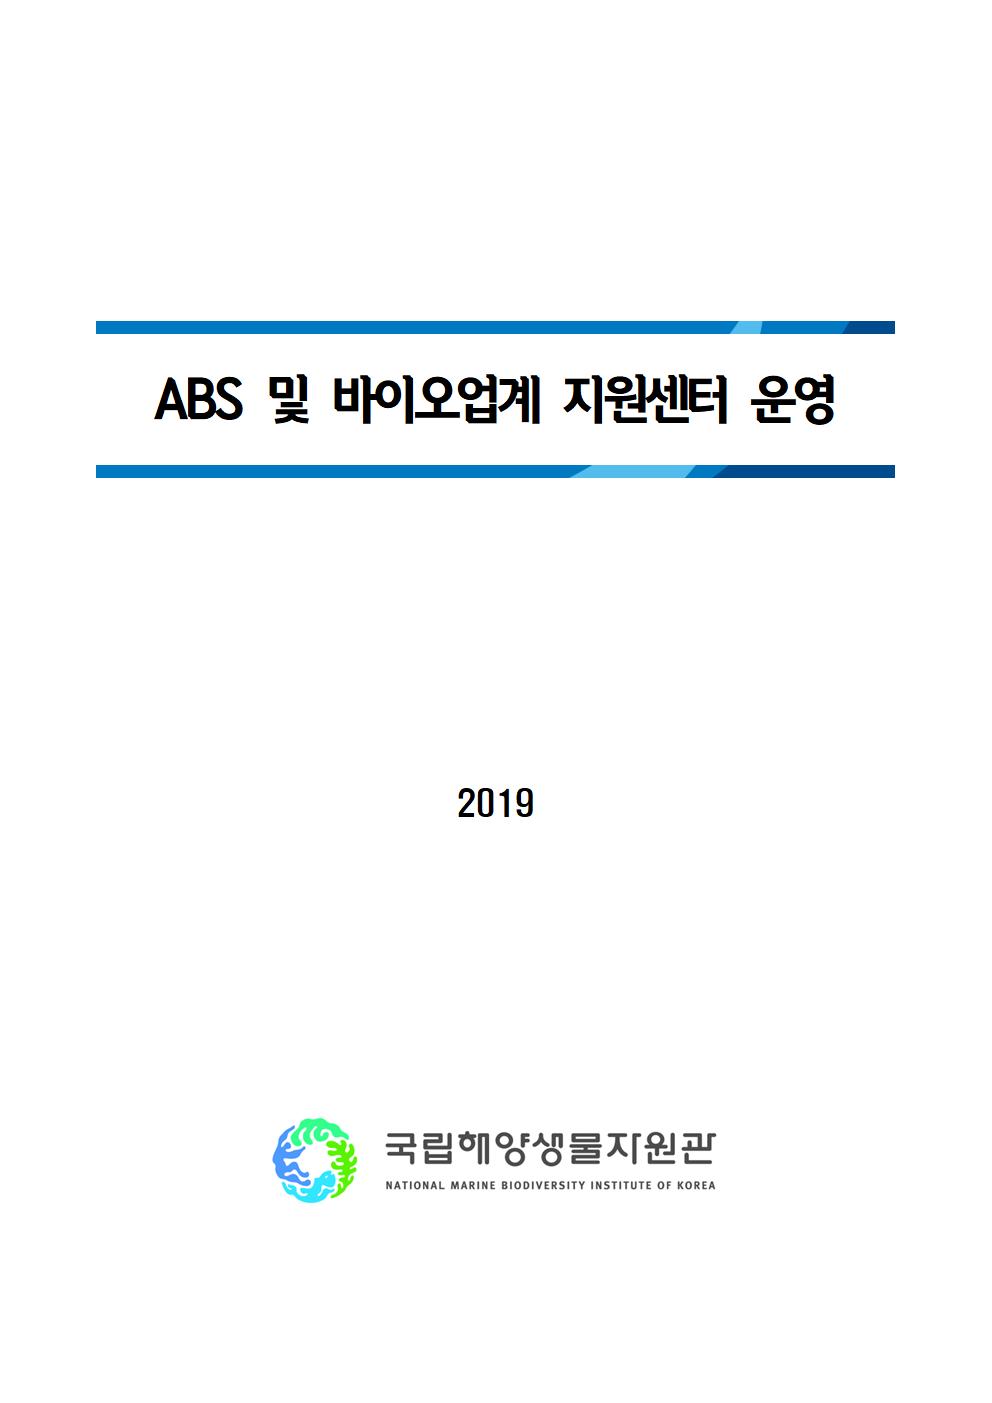 [2019년 기관고유사업] ABS 및 바이오업계 지원센터 운영